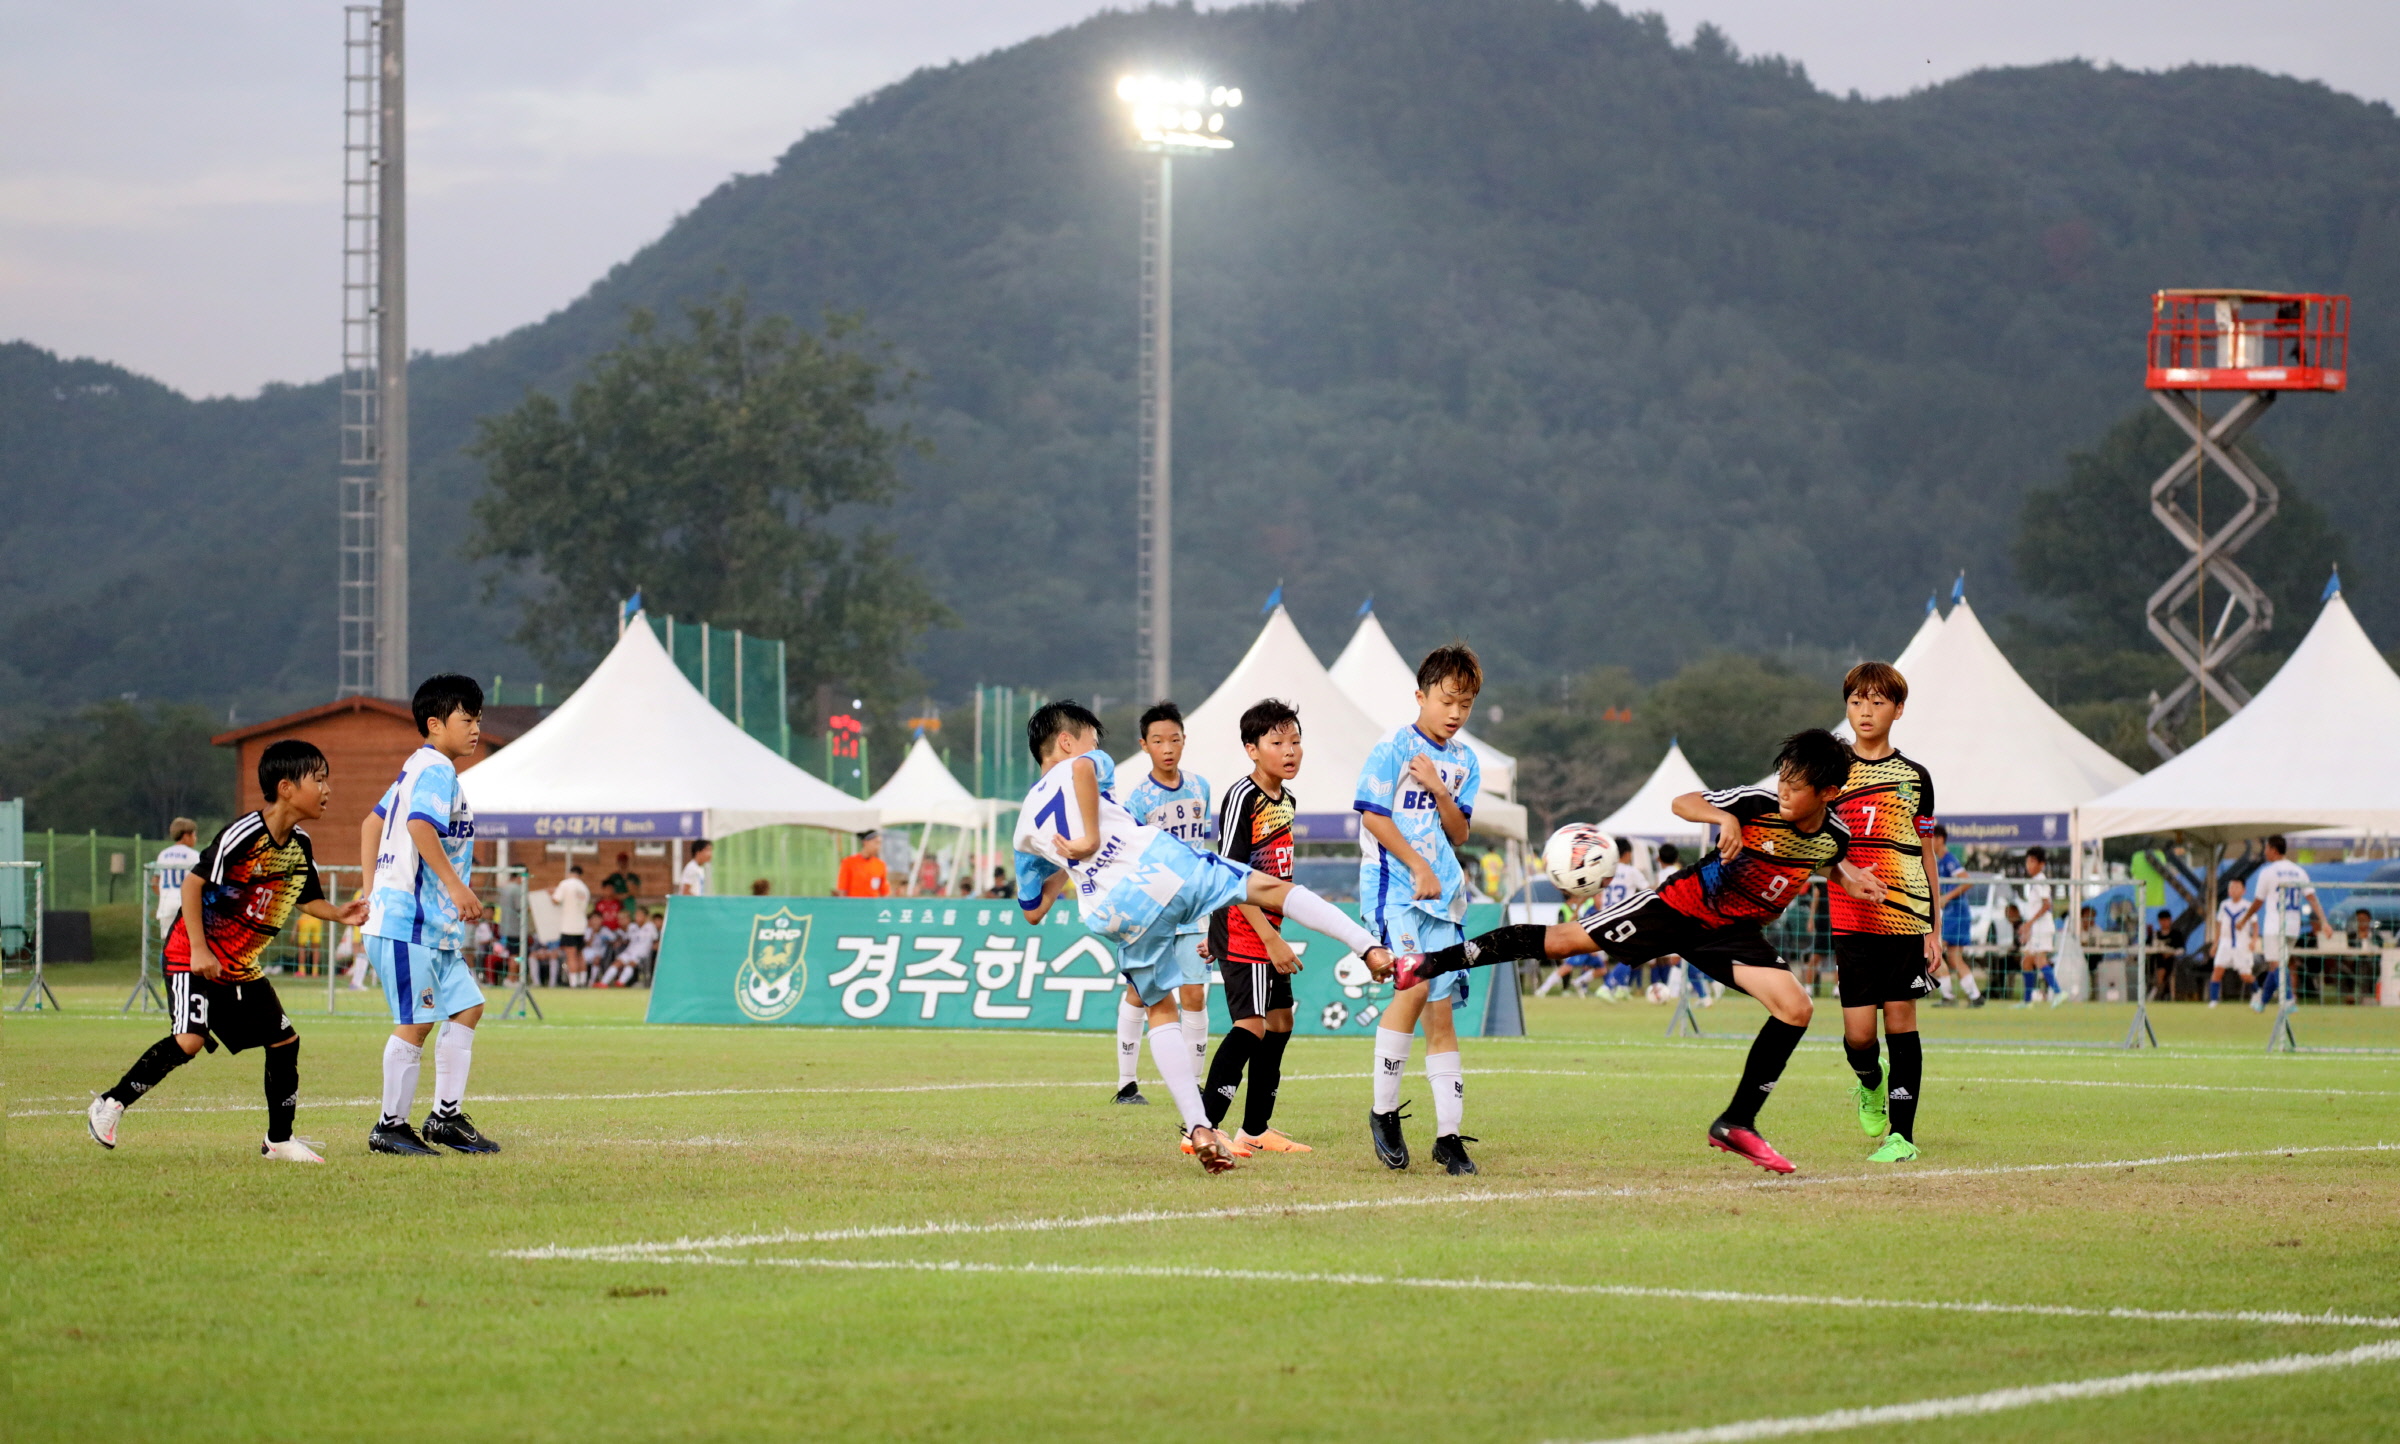 올 8월 경주서 개최된 화랑대기 전국 유소년 축구대회 모습